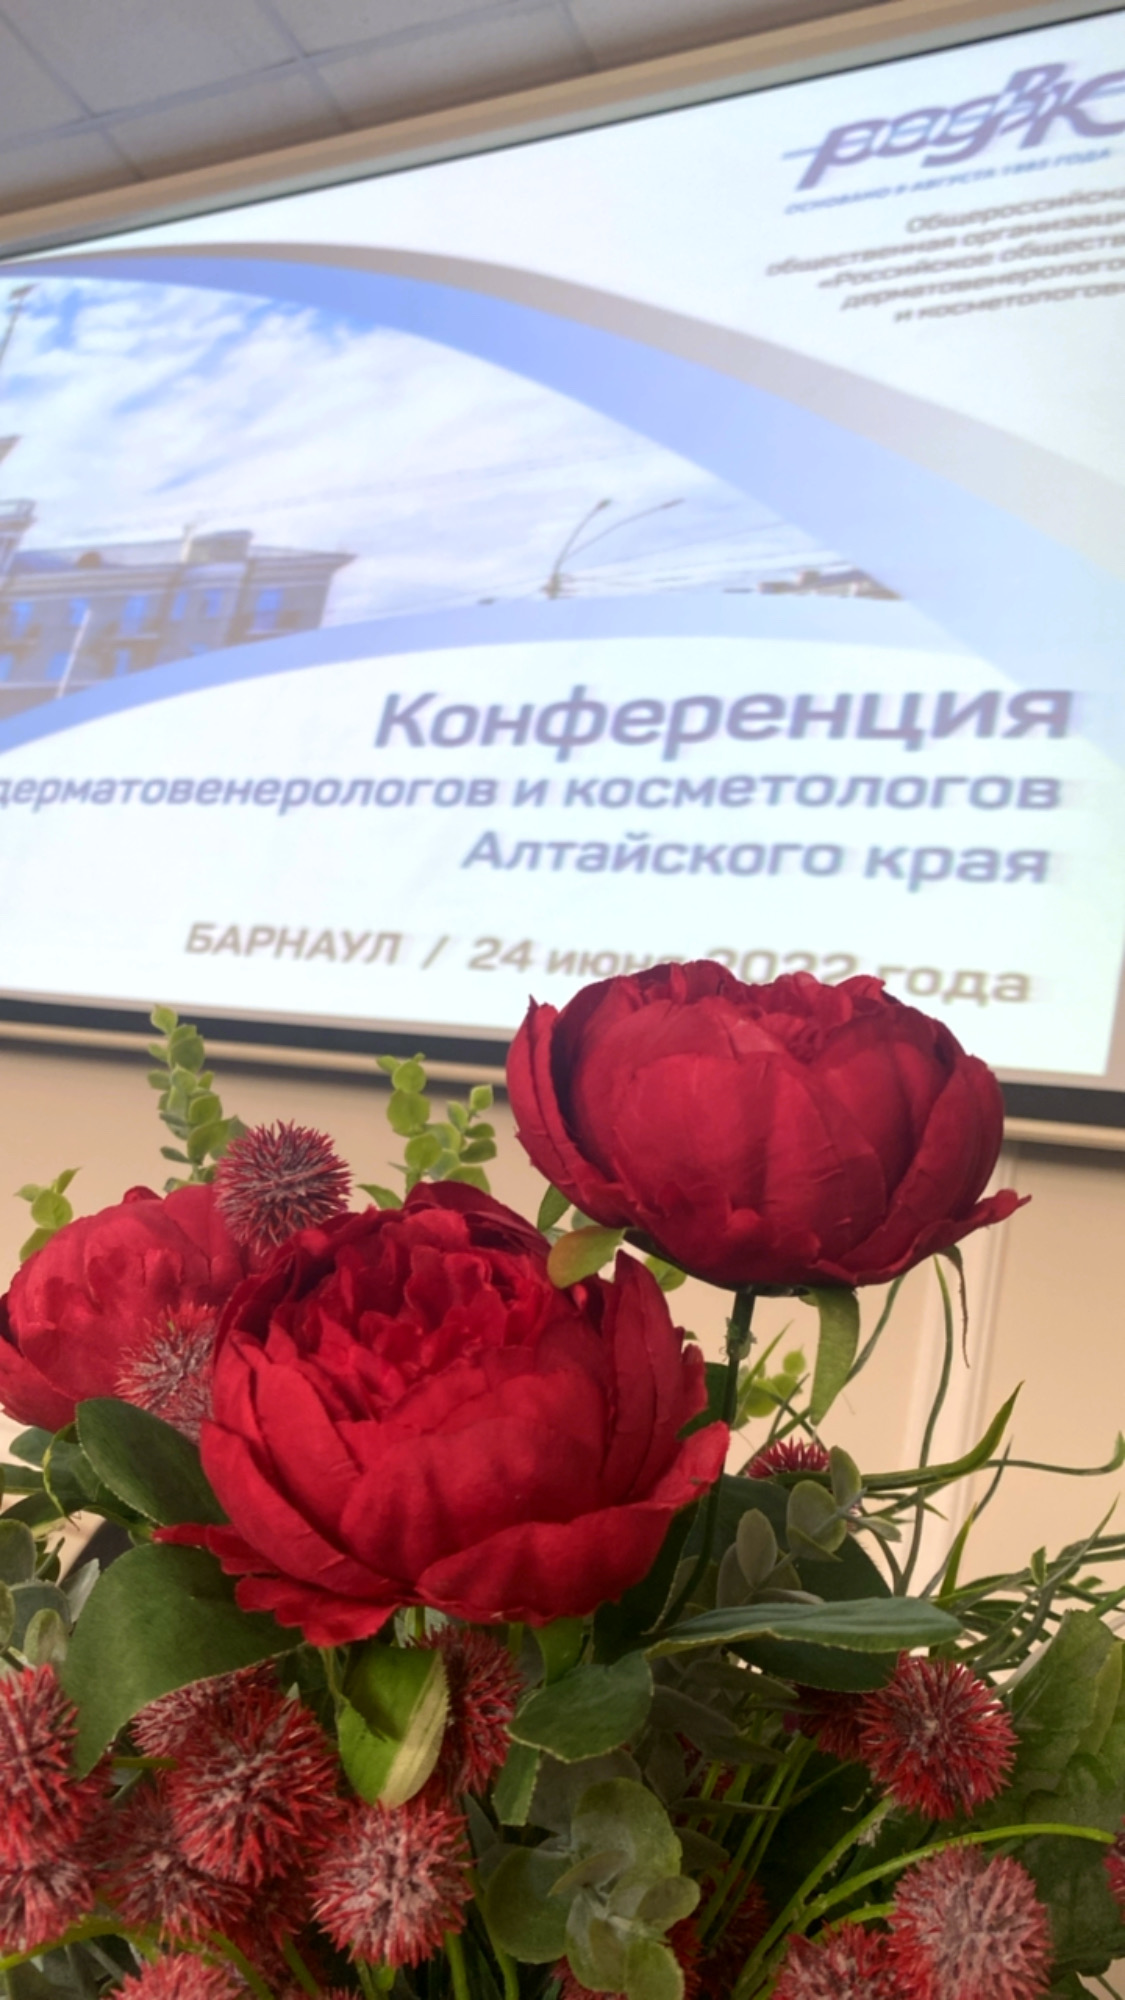 24 июня в Барнауле прошла Конференция дерматовенерологов и косметологов Алтайского края